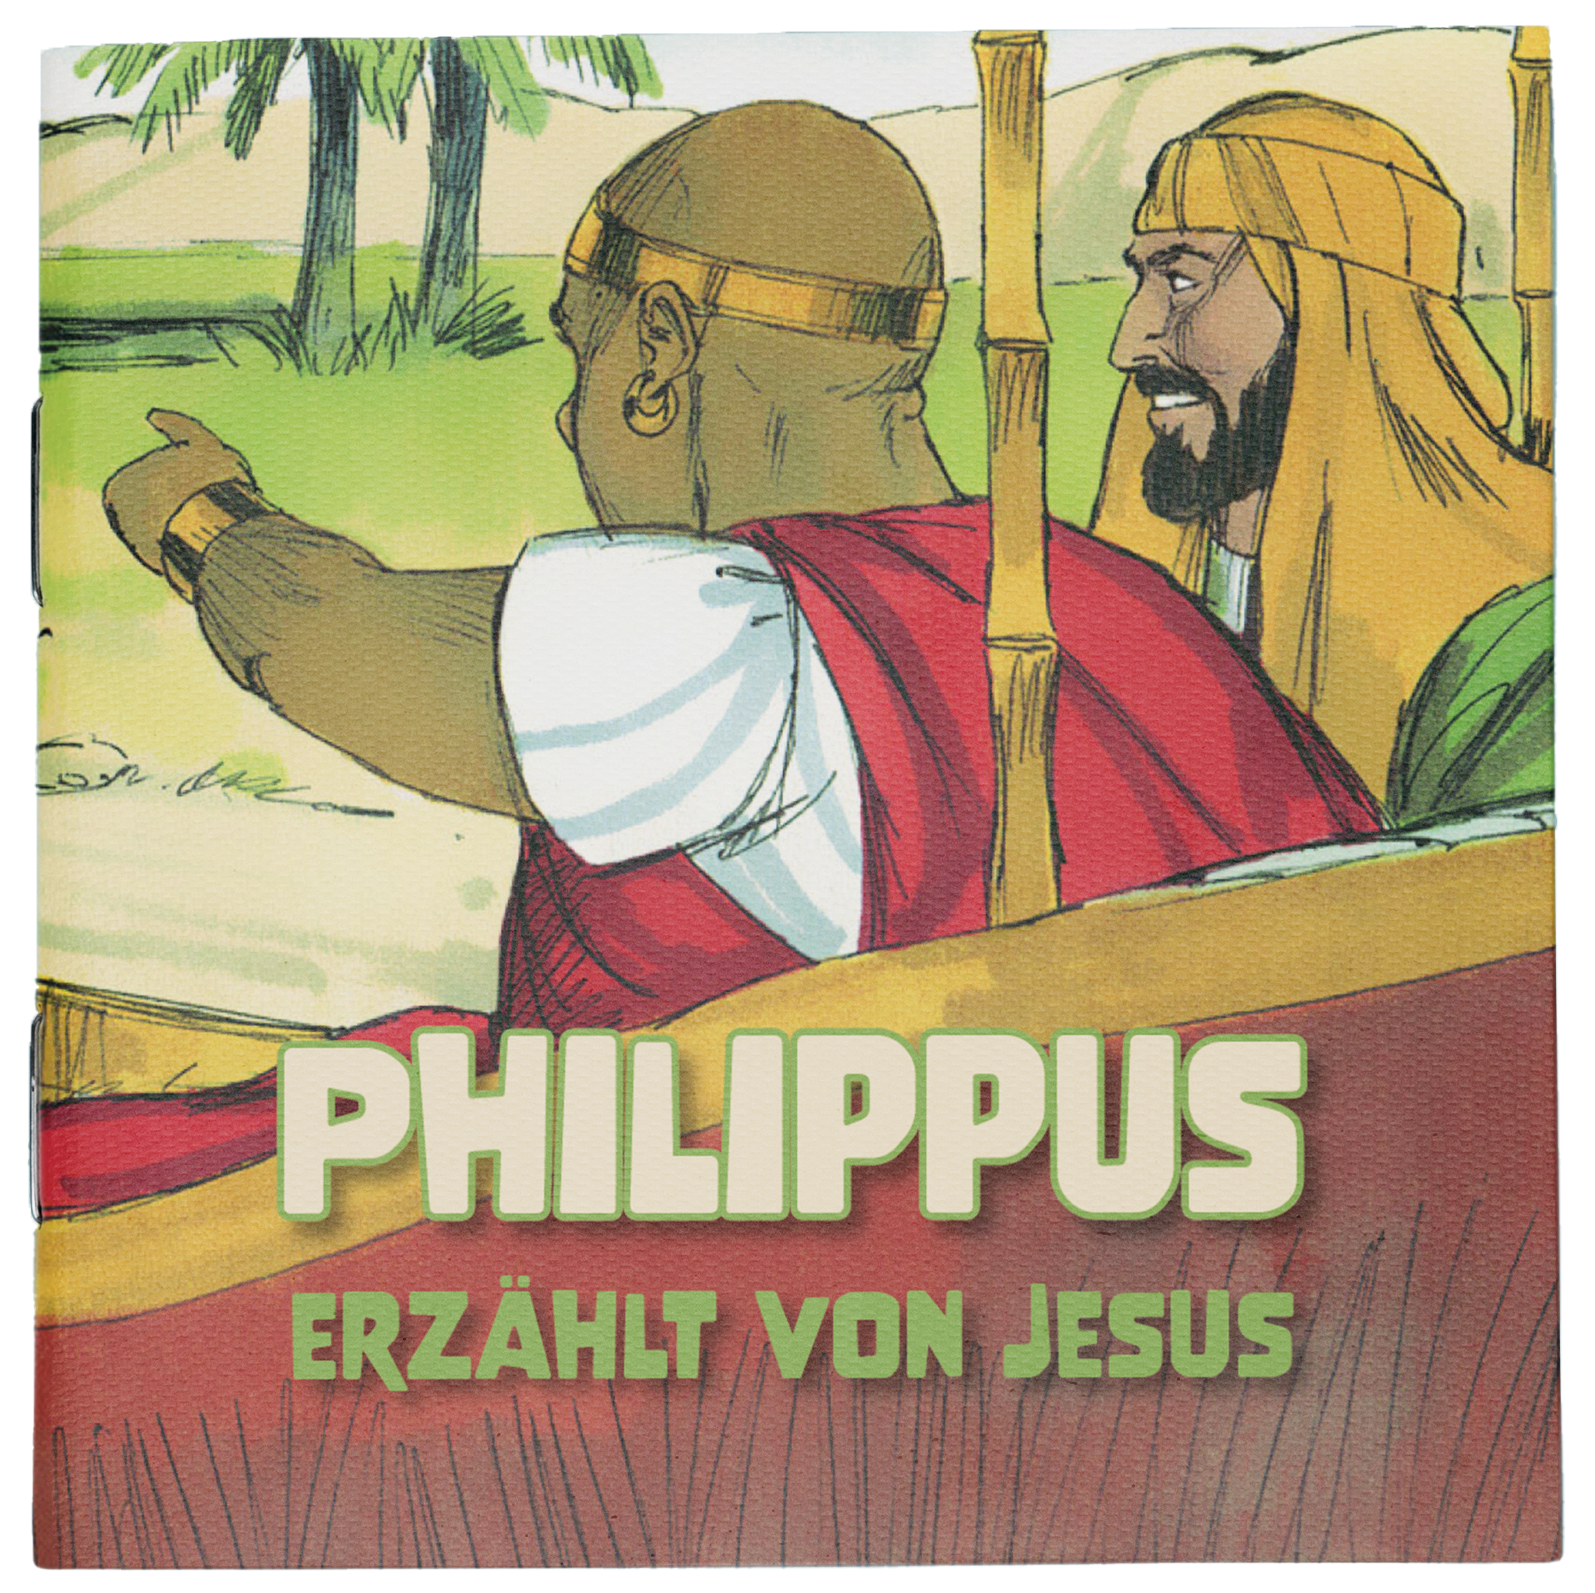 Philippus erzählt von Jesus